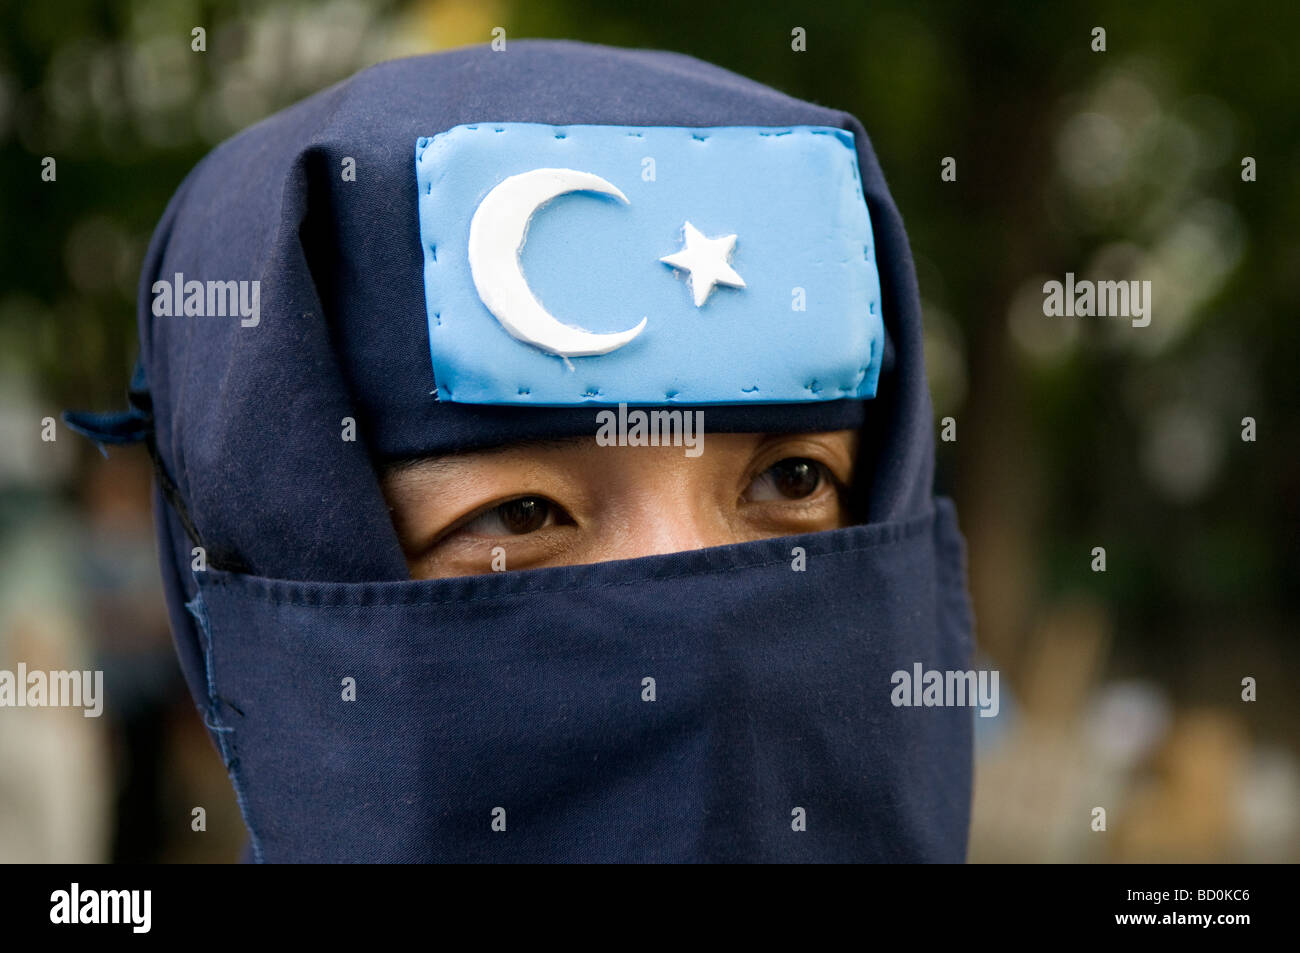 Un partisan du mouvement islamique du Turkestan Oriental (TIM) fondé par Uyghur jihadistes dans la région autonome ouïghoure du Xinjiang. L'ouest de la Chine Banque D'Images